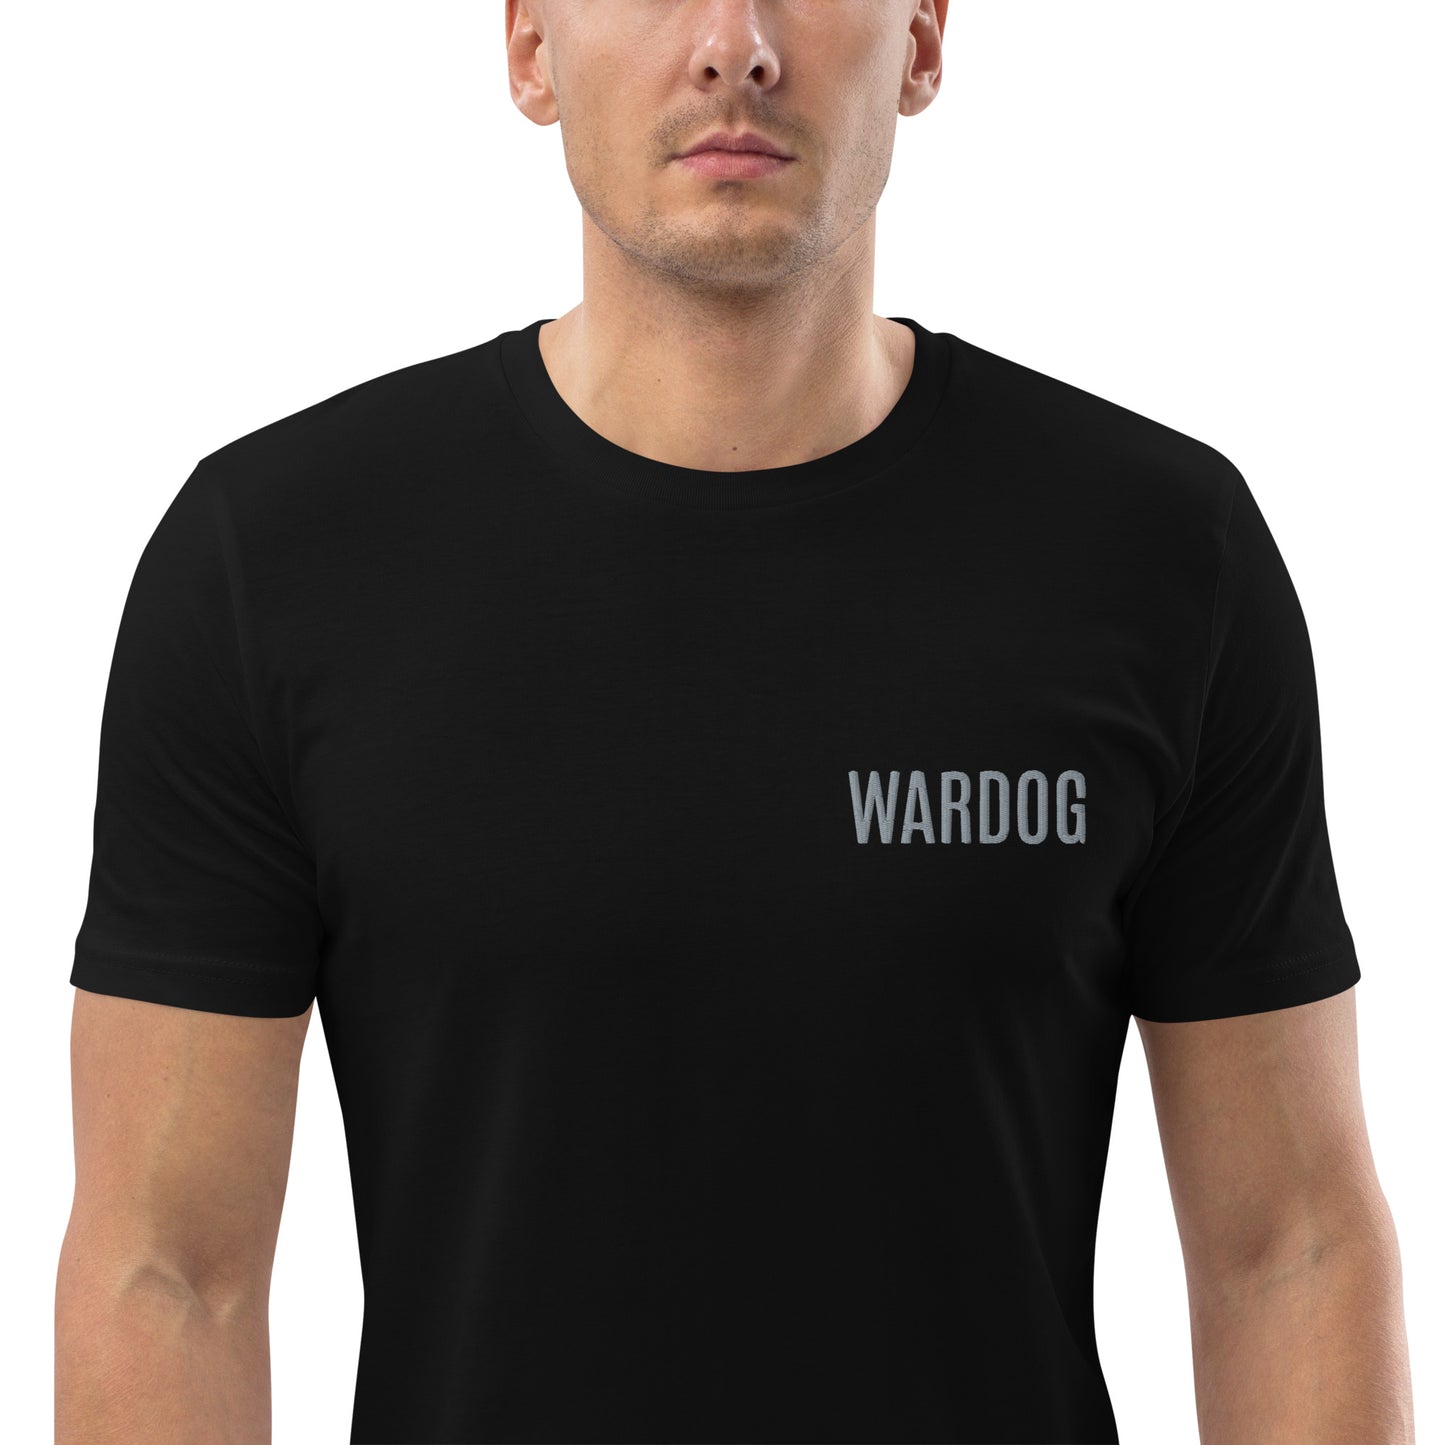 WARDOG organic cotton t-shirt